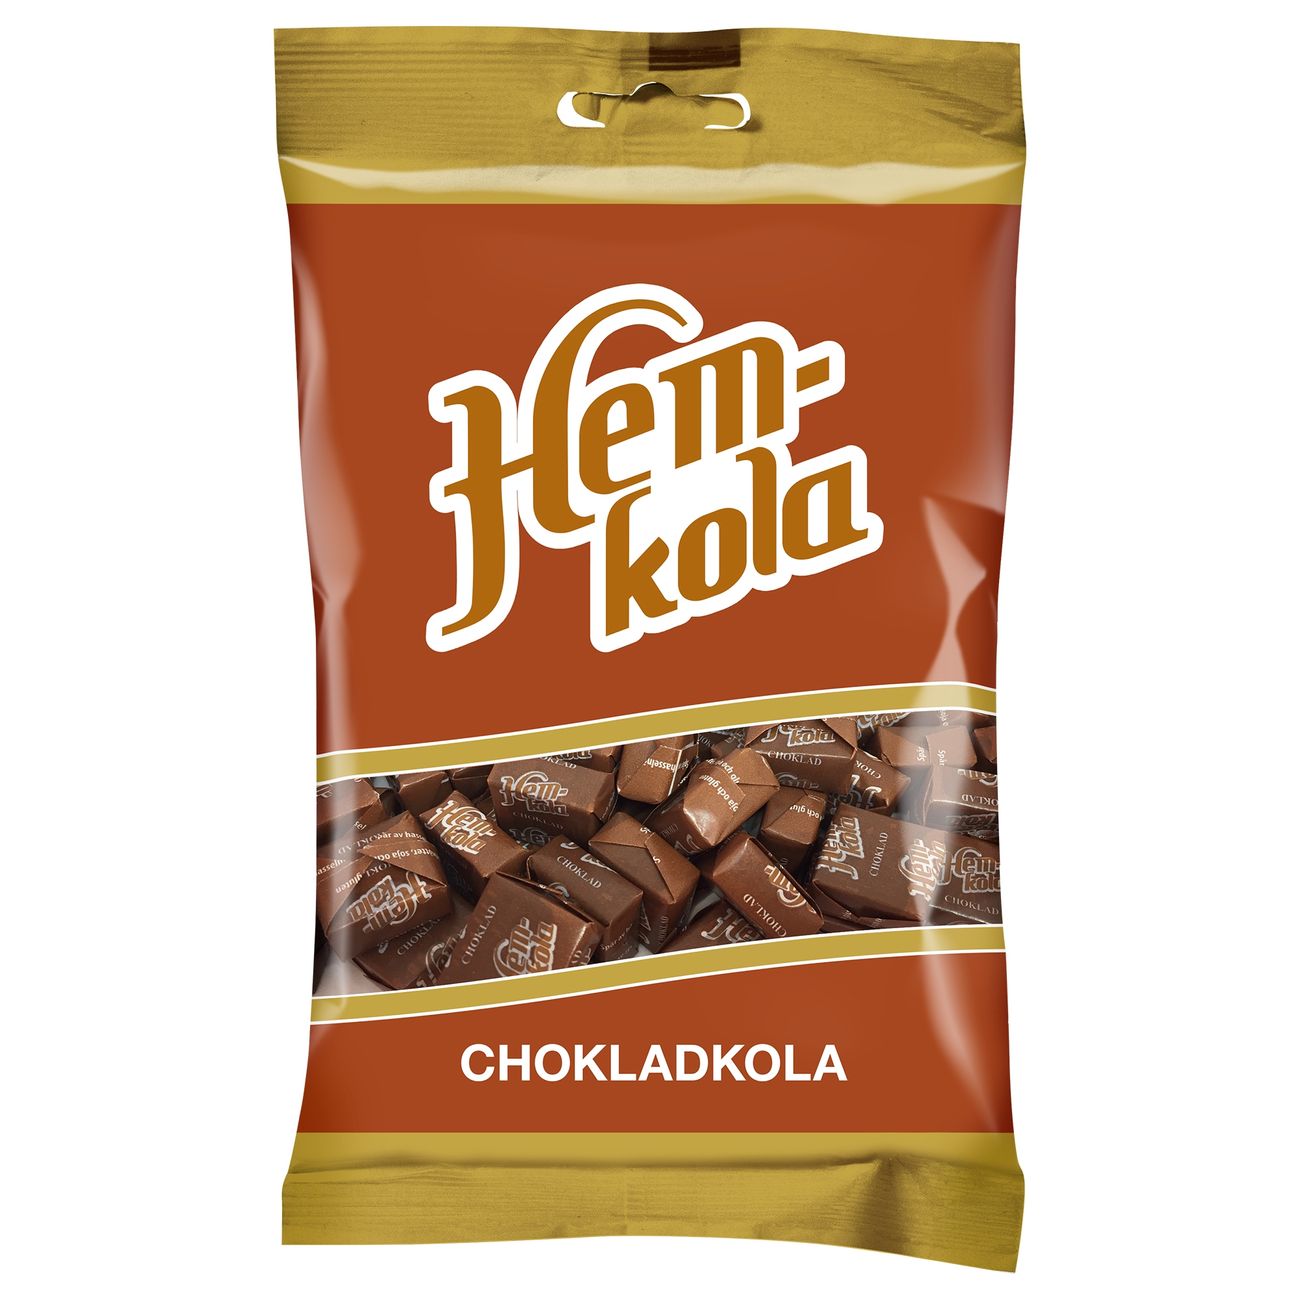 hemkola-choklad-89829-1